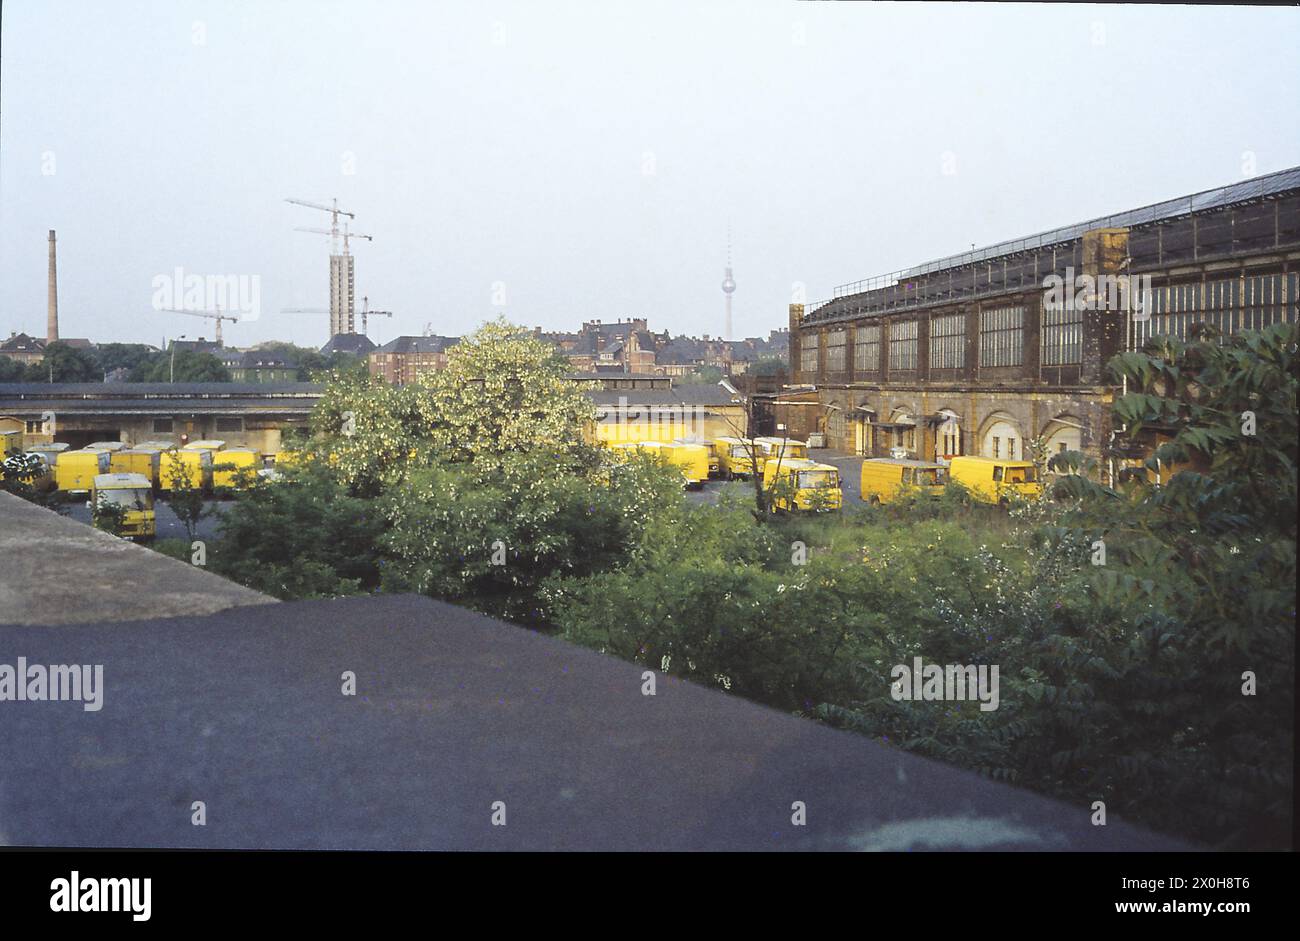 Der Lehrter Stadt-Bahnhof war einer der wenigen Stadtbahnhöfe, die sich noch vor dem Zweiten Weltkrieg in ihrem ursprünglichen Zustand befanden. Sie überquerte den Fernbahnhof Lehrter und war bereits für den Ausbau eines Fernbahnsteigs für die Stadtbahn vorbereitet. Nach dem Abriss des alten Lehrter Fernbahnhofs gab es nur noch Güterverkehr auf der alten Hamburg- und Lehrter-Strecke. Leider wurde nach der Wiedervereinigung der neu renovierte Bahnhof abgerissen, statt wie beim Umbau des neuen Hauptbahnhofs in die moderne Architektur des neuen Hauptbahnhofs integriert zu werden Stockfoto